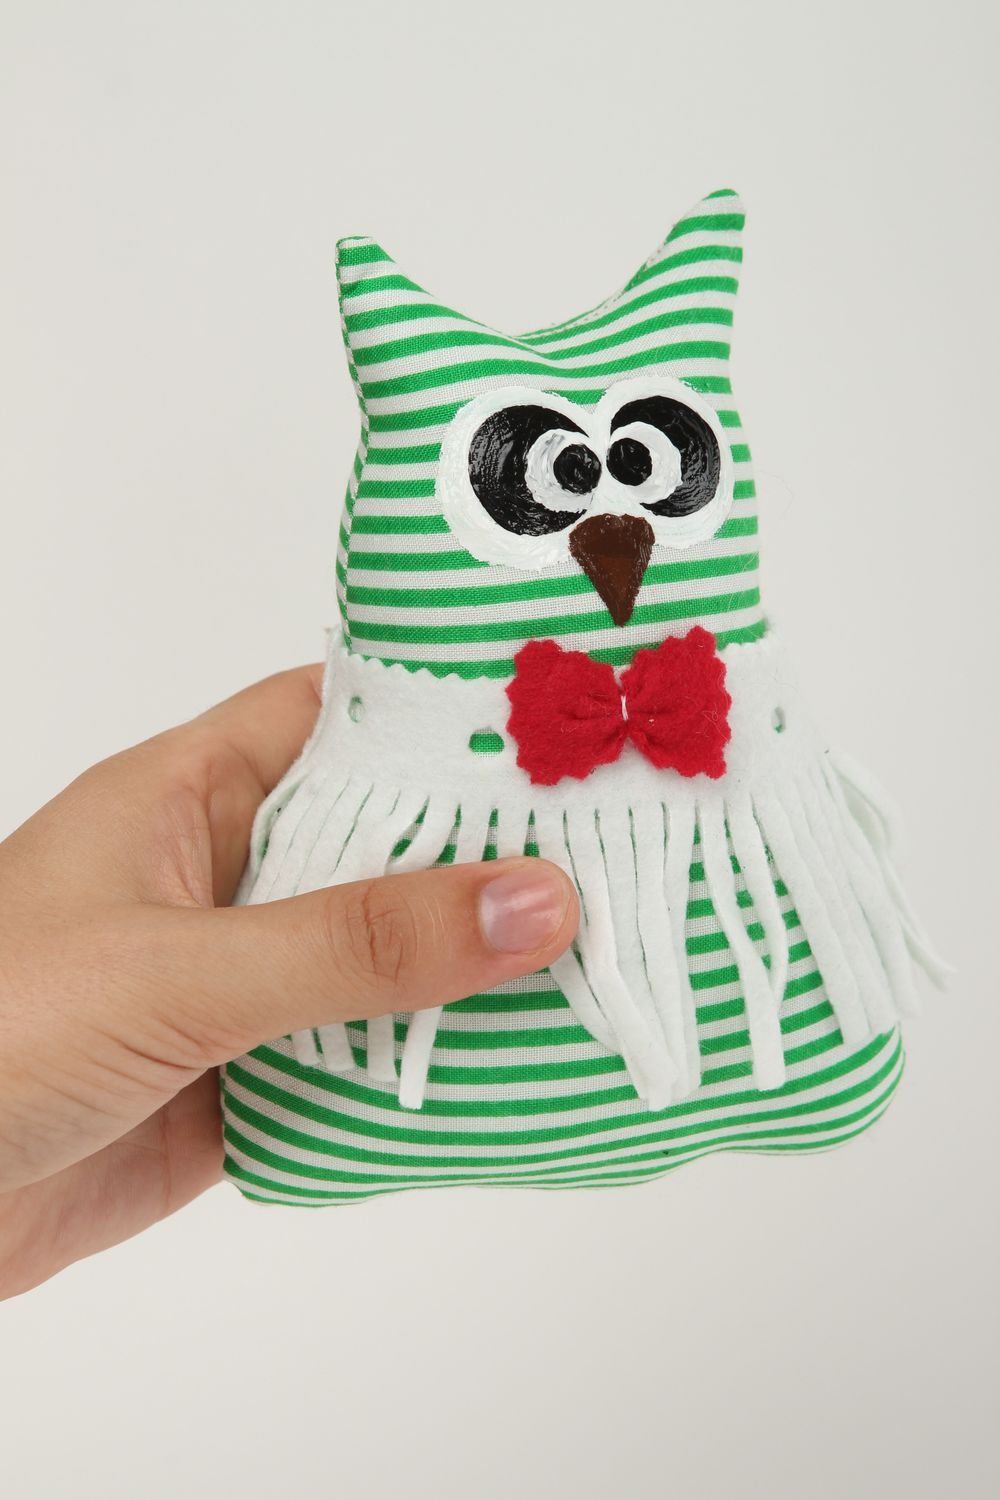 Juguete artesanal con forma de gato verde peluche para regalar souvenir original foto 5